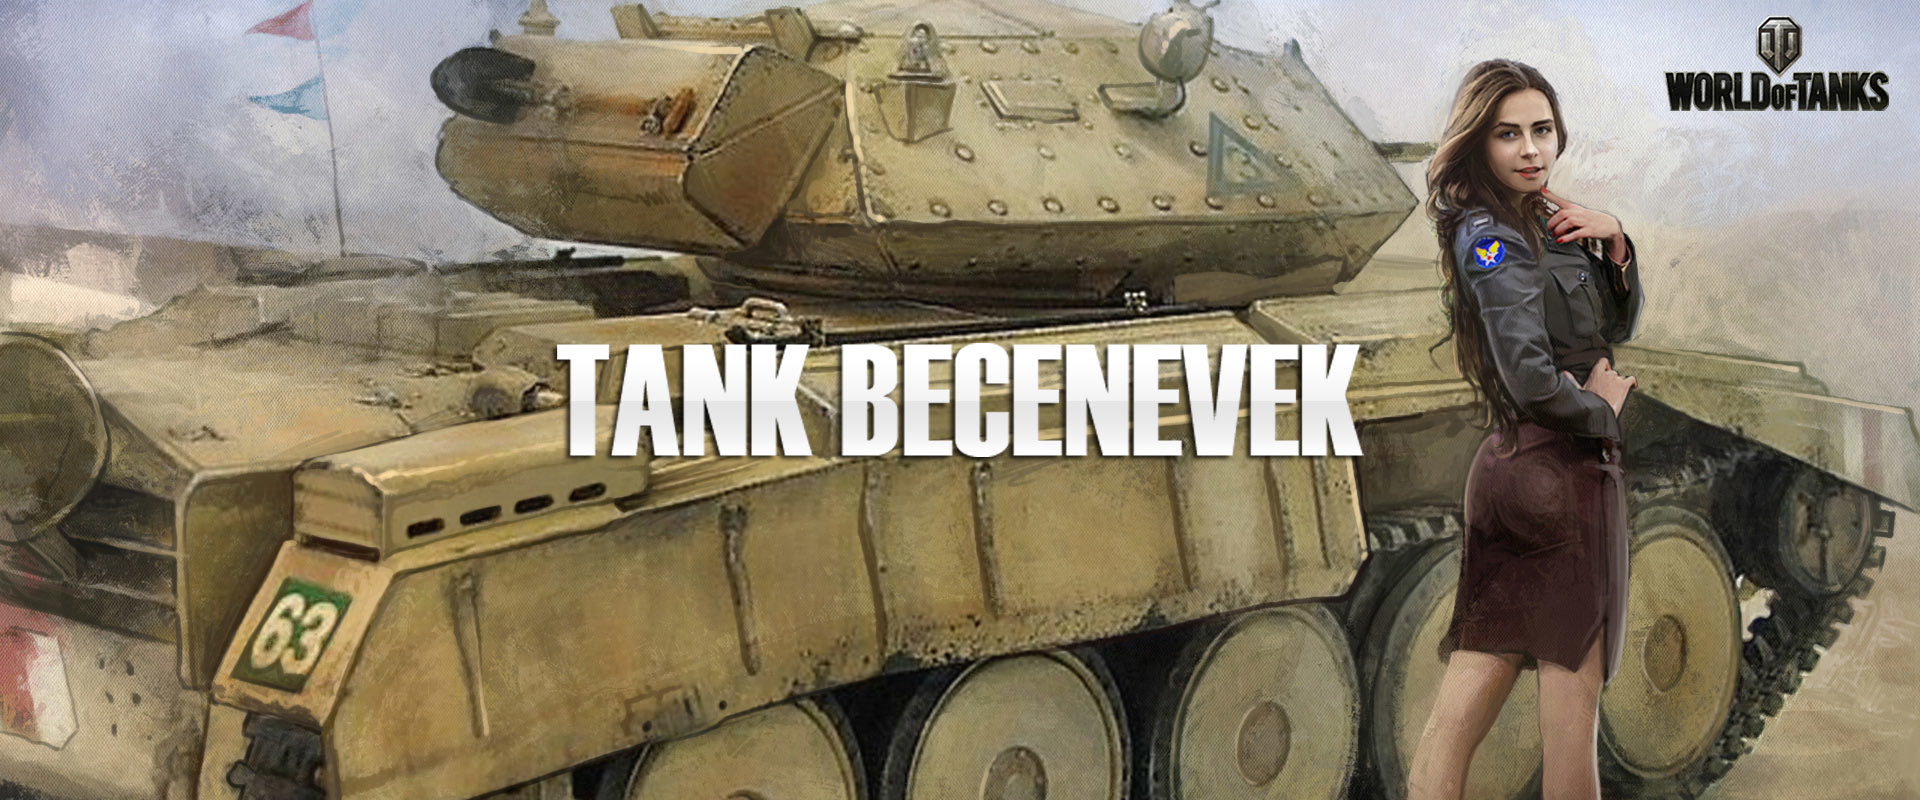 A legütősebb tank fedőnevek nagy gyűjteménye